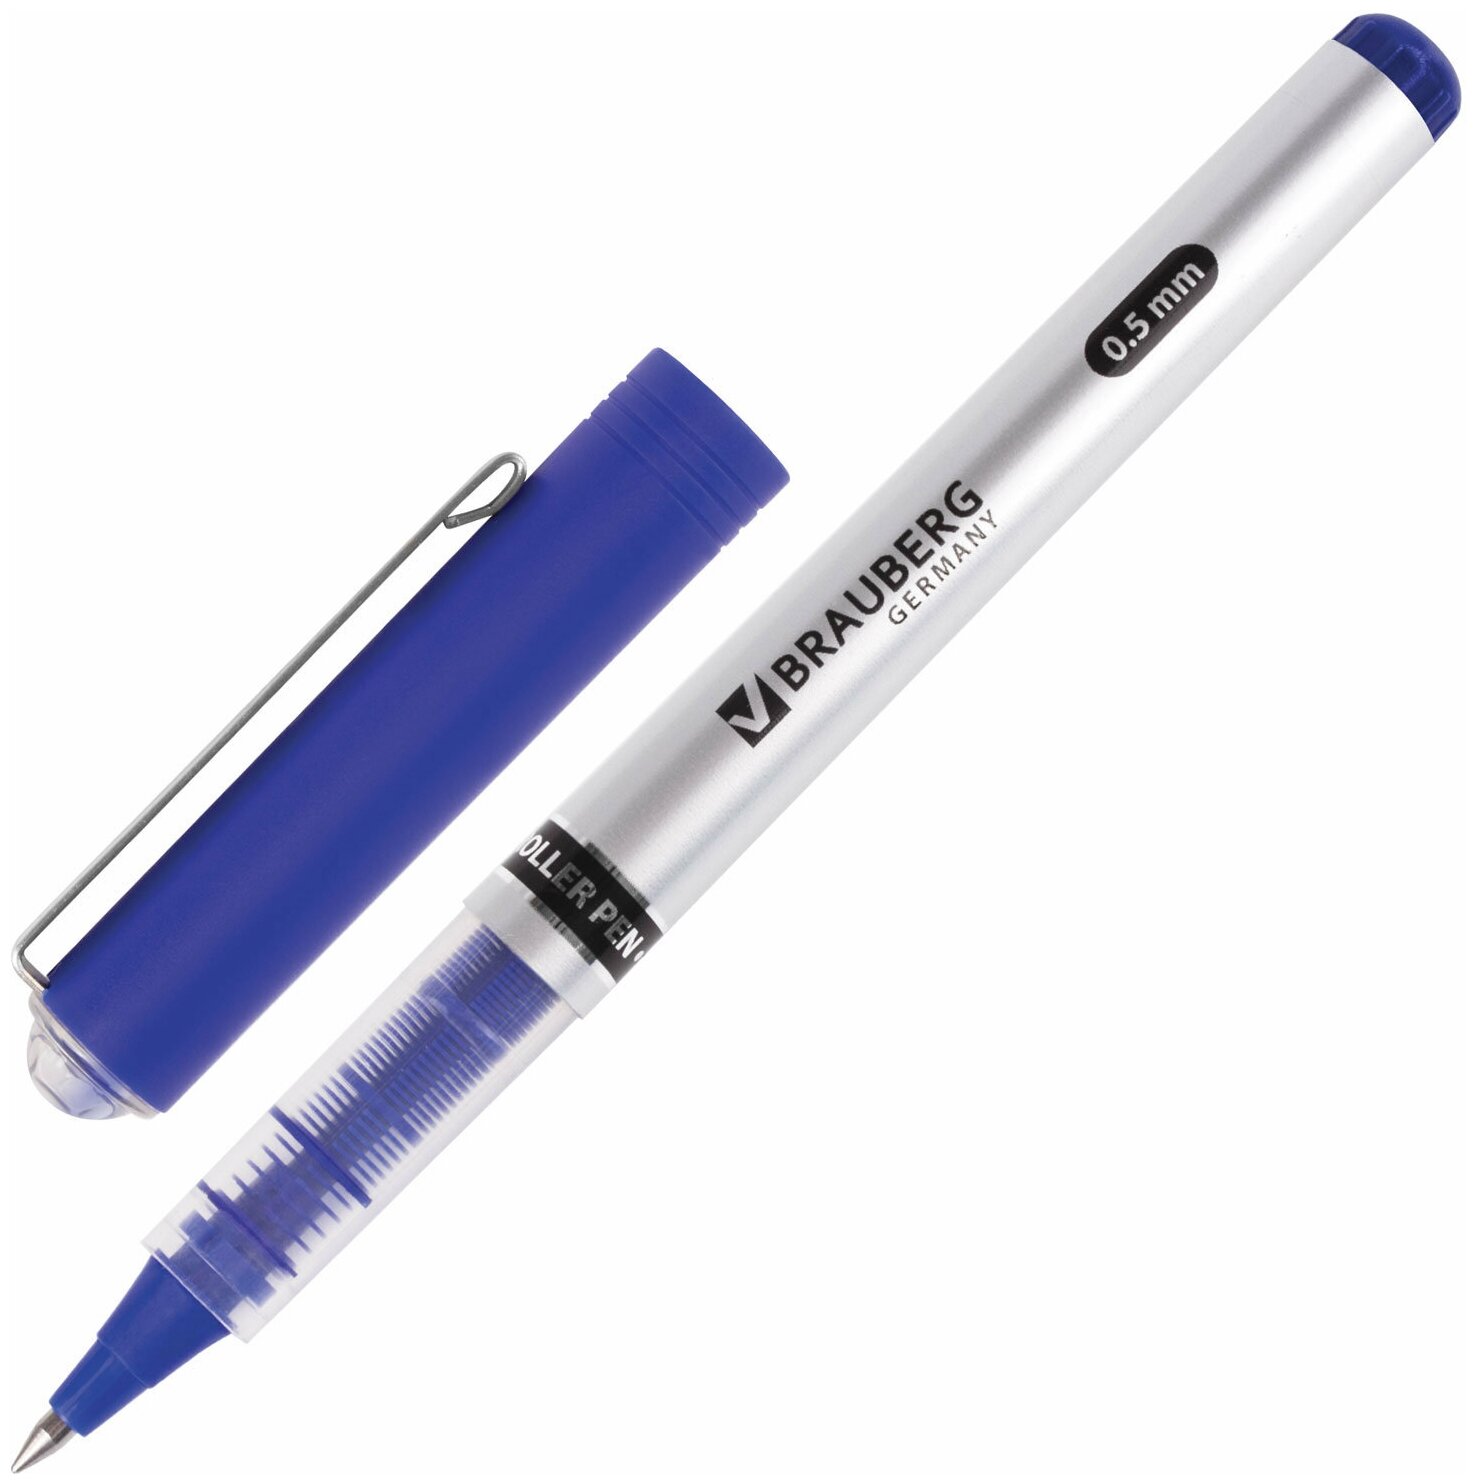 Ручка-роллер Brauberg Flagman, корпус серебристый, хромированные детали, 0,5 мм, линия 0,3 мм, синяя, 1 шт (141556)